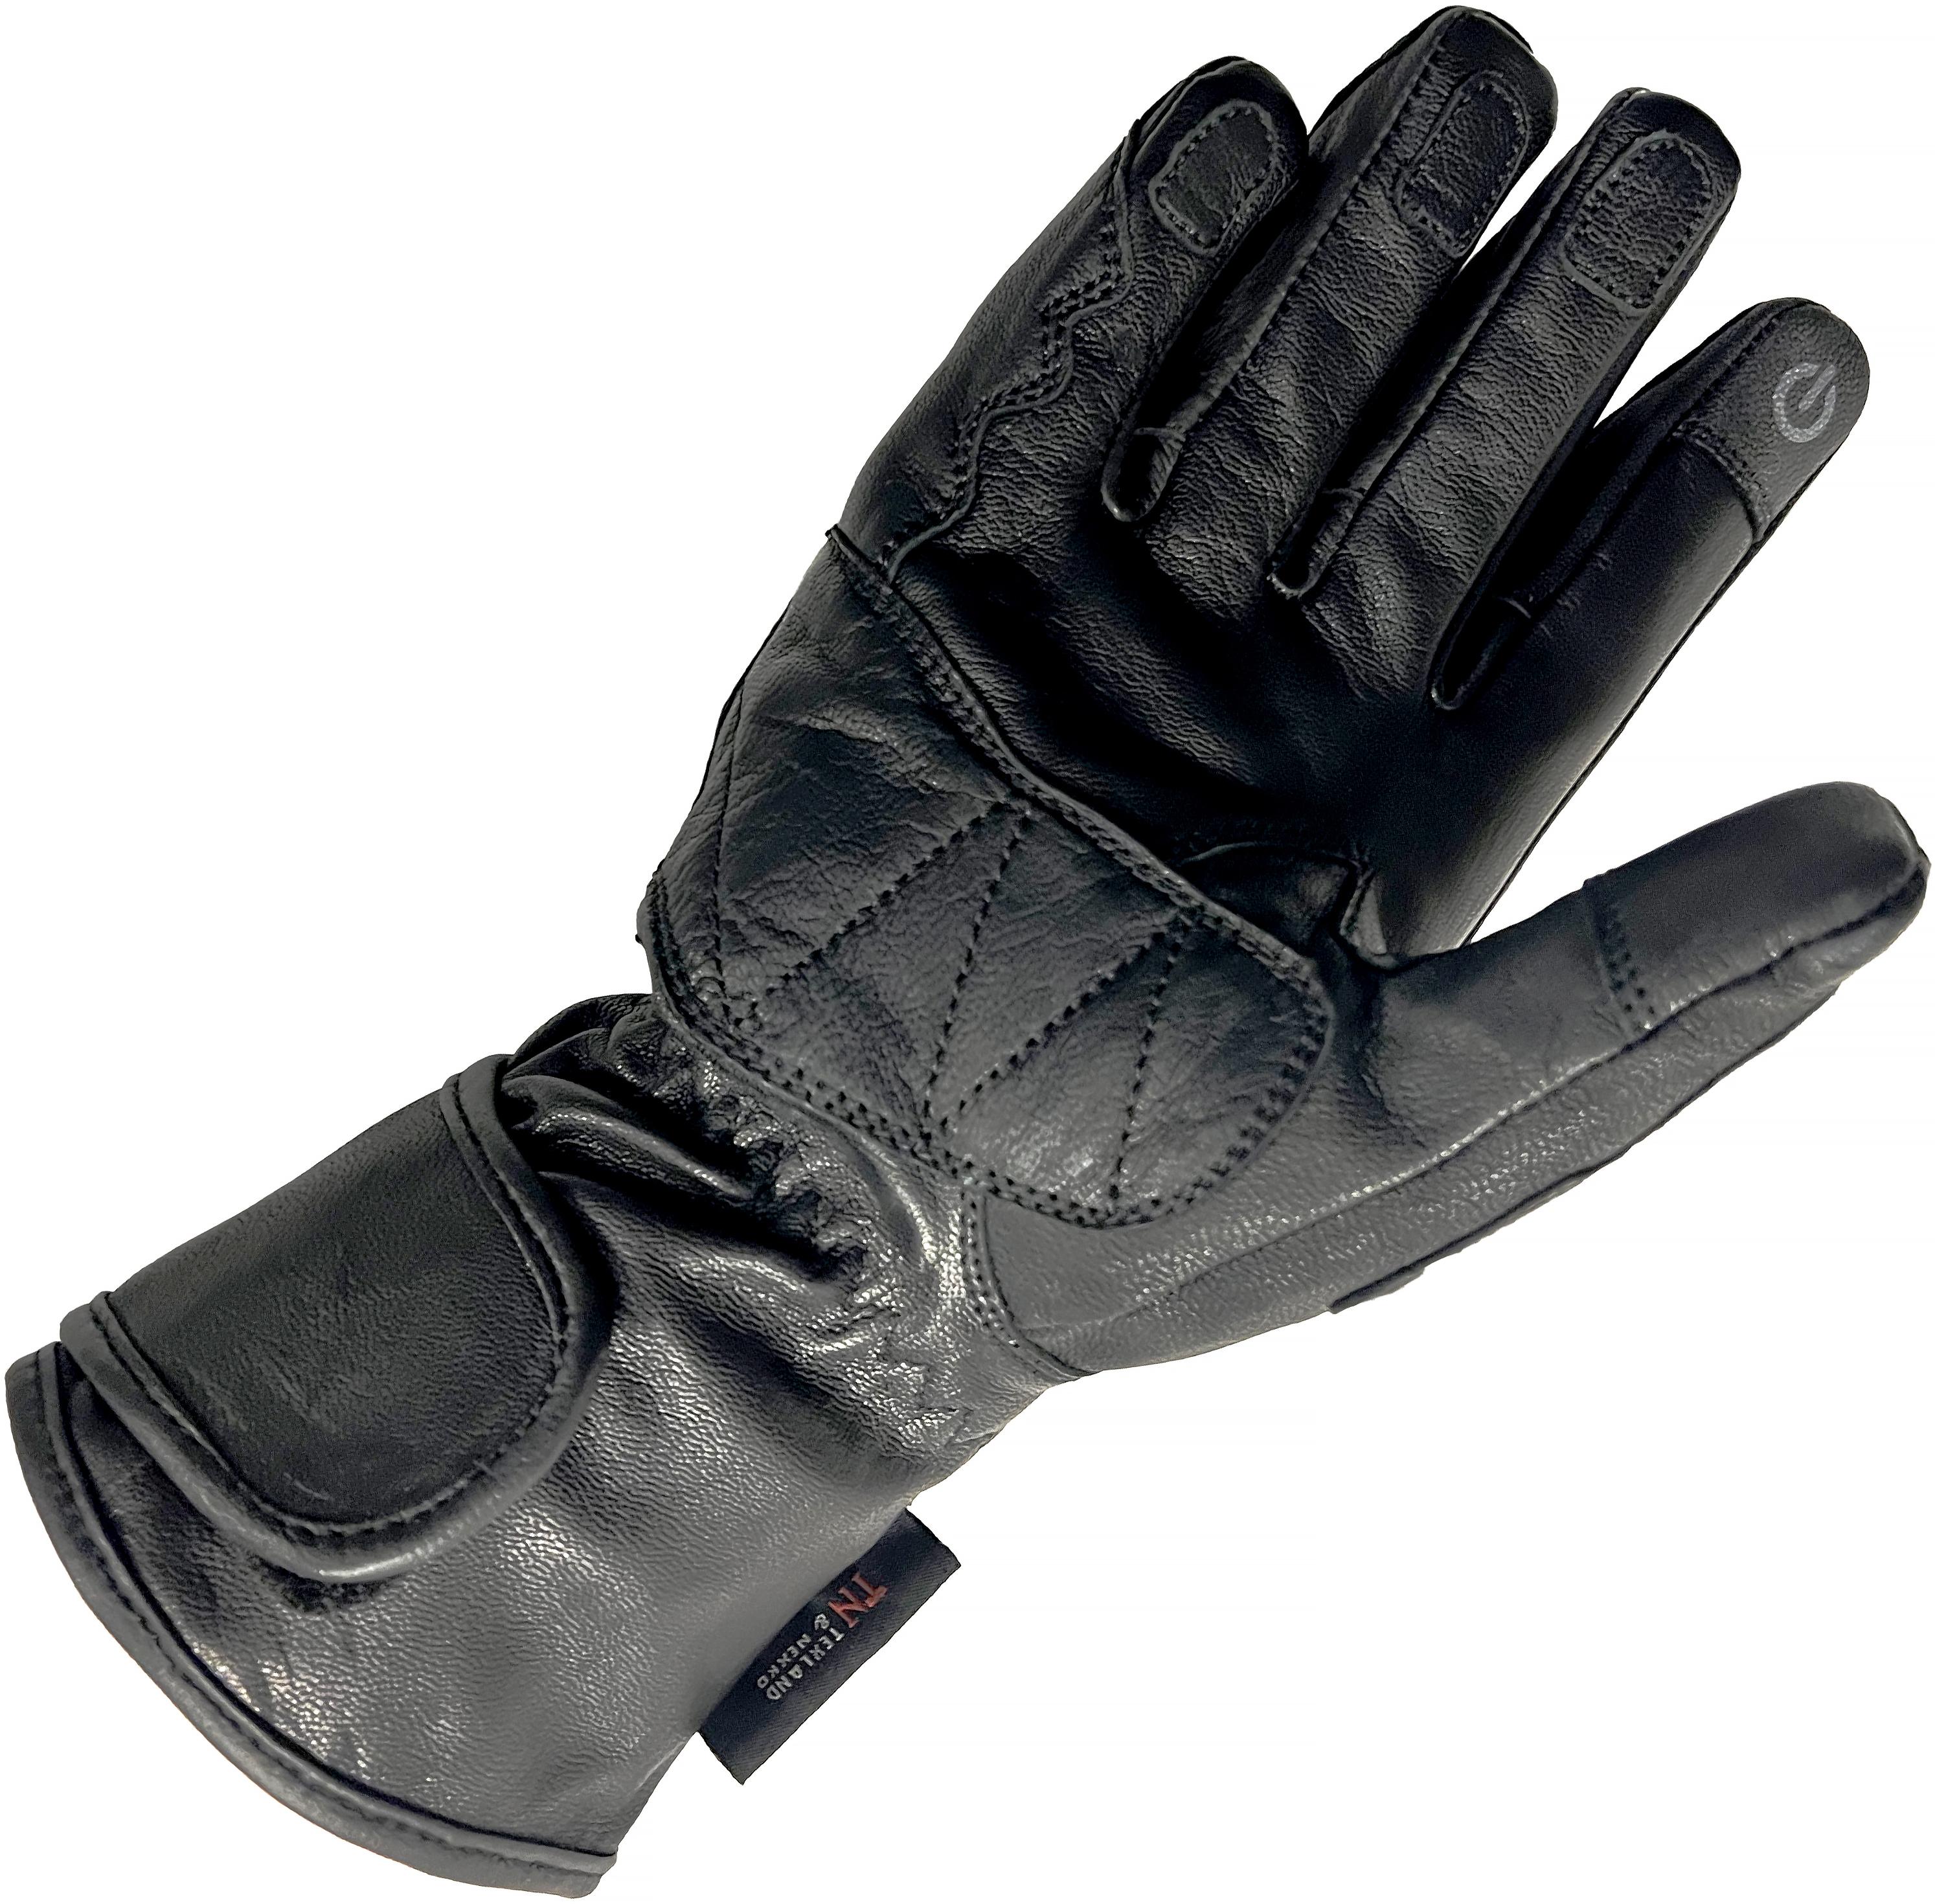 Richa Waterproof Racing Motorcycle Gloves - Black, Large, Medium